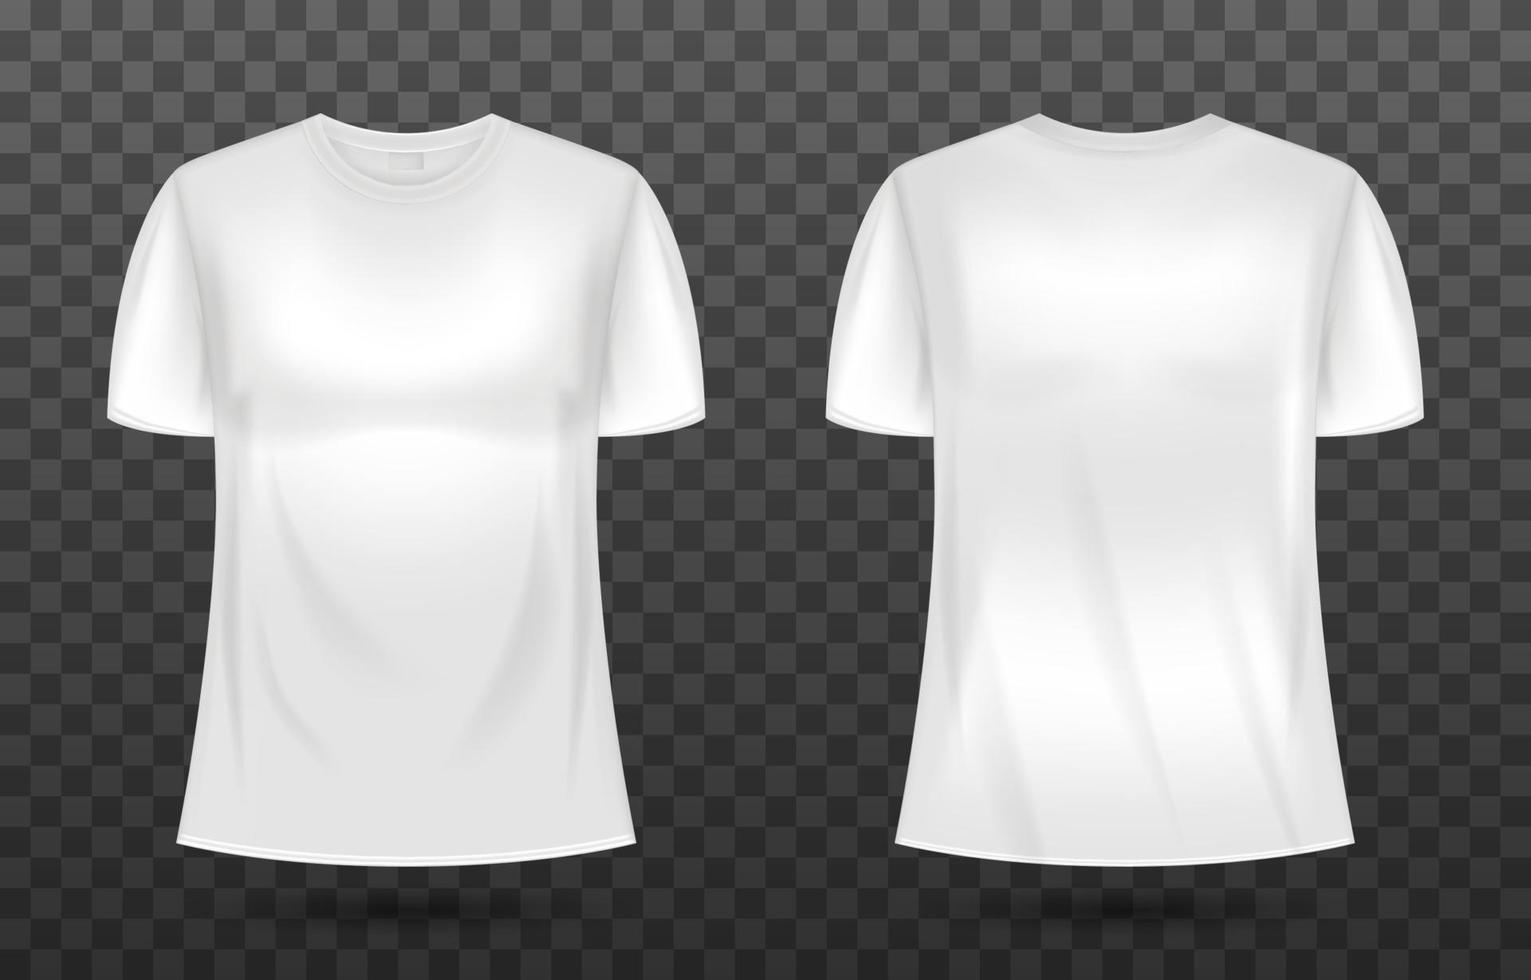 3D T-Shirt White Mockup vector